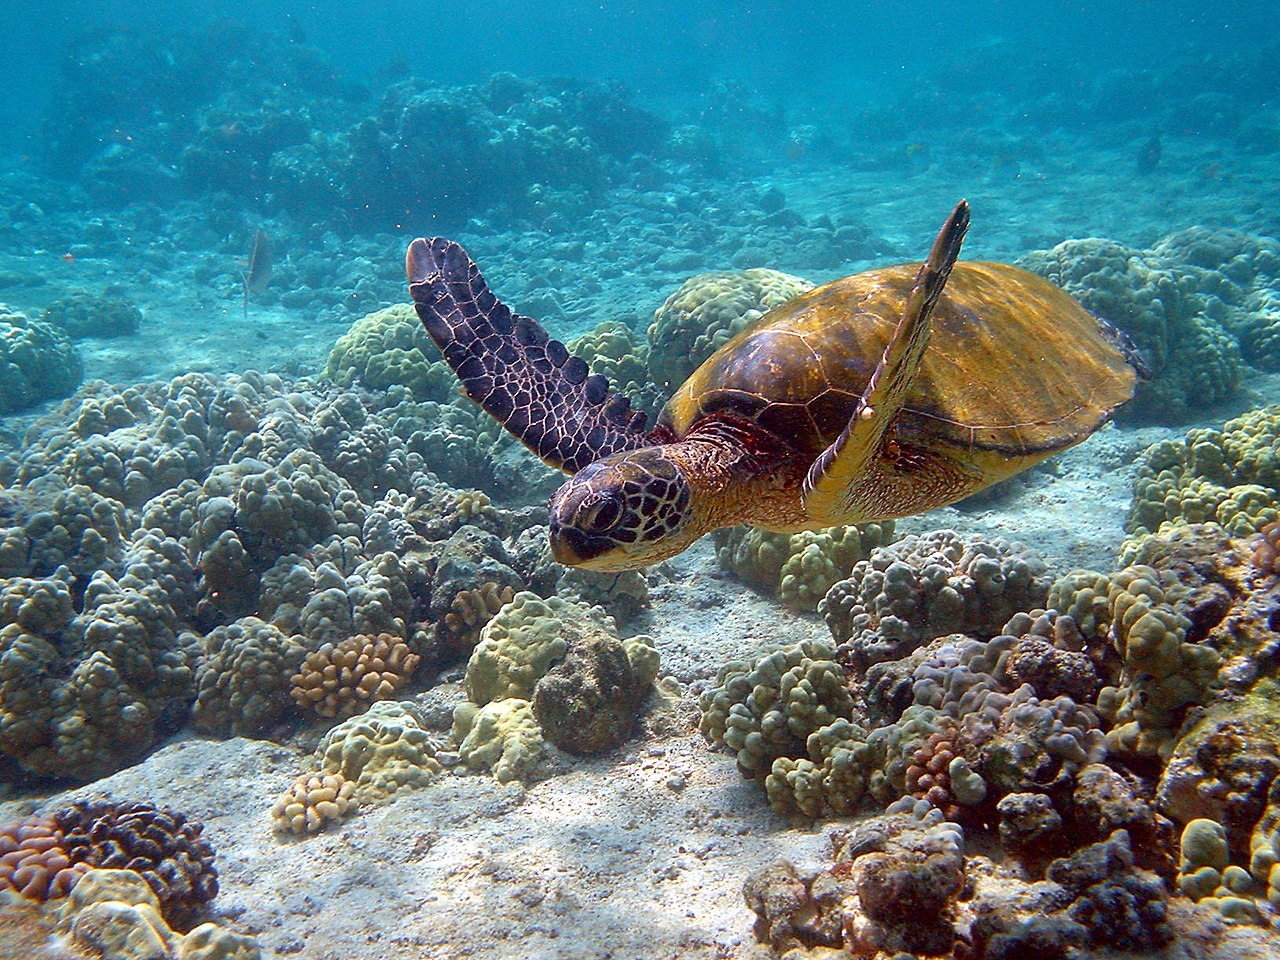 Rùa Hawaii: Những hình ảnh rùa Hawaii thật sự đáng yêu và thu hút. Trong hình, loài rùa này sống động và đầy năng lượng. Bản sắc Hawaii luôn thu hút du khách, vậy tại sao bạn không cùng hòa mình vào với khung cảnh tuyệt đẹp này? Hãy xem và thưởng thức những hình ảnh tuyệt vời này ngay bây giờ!